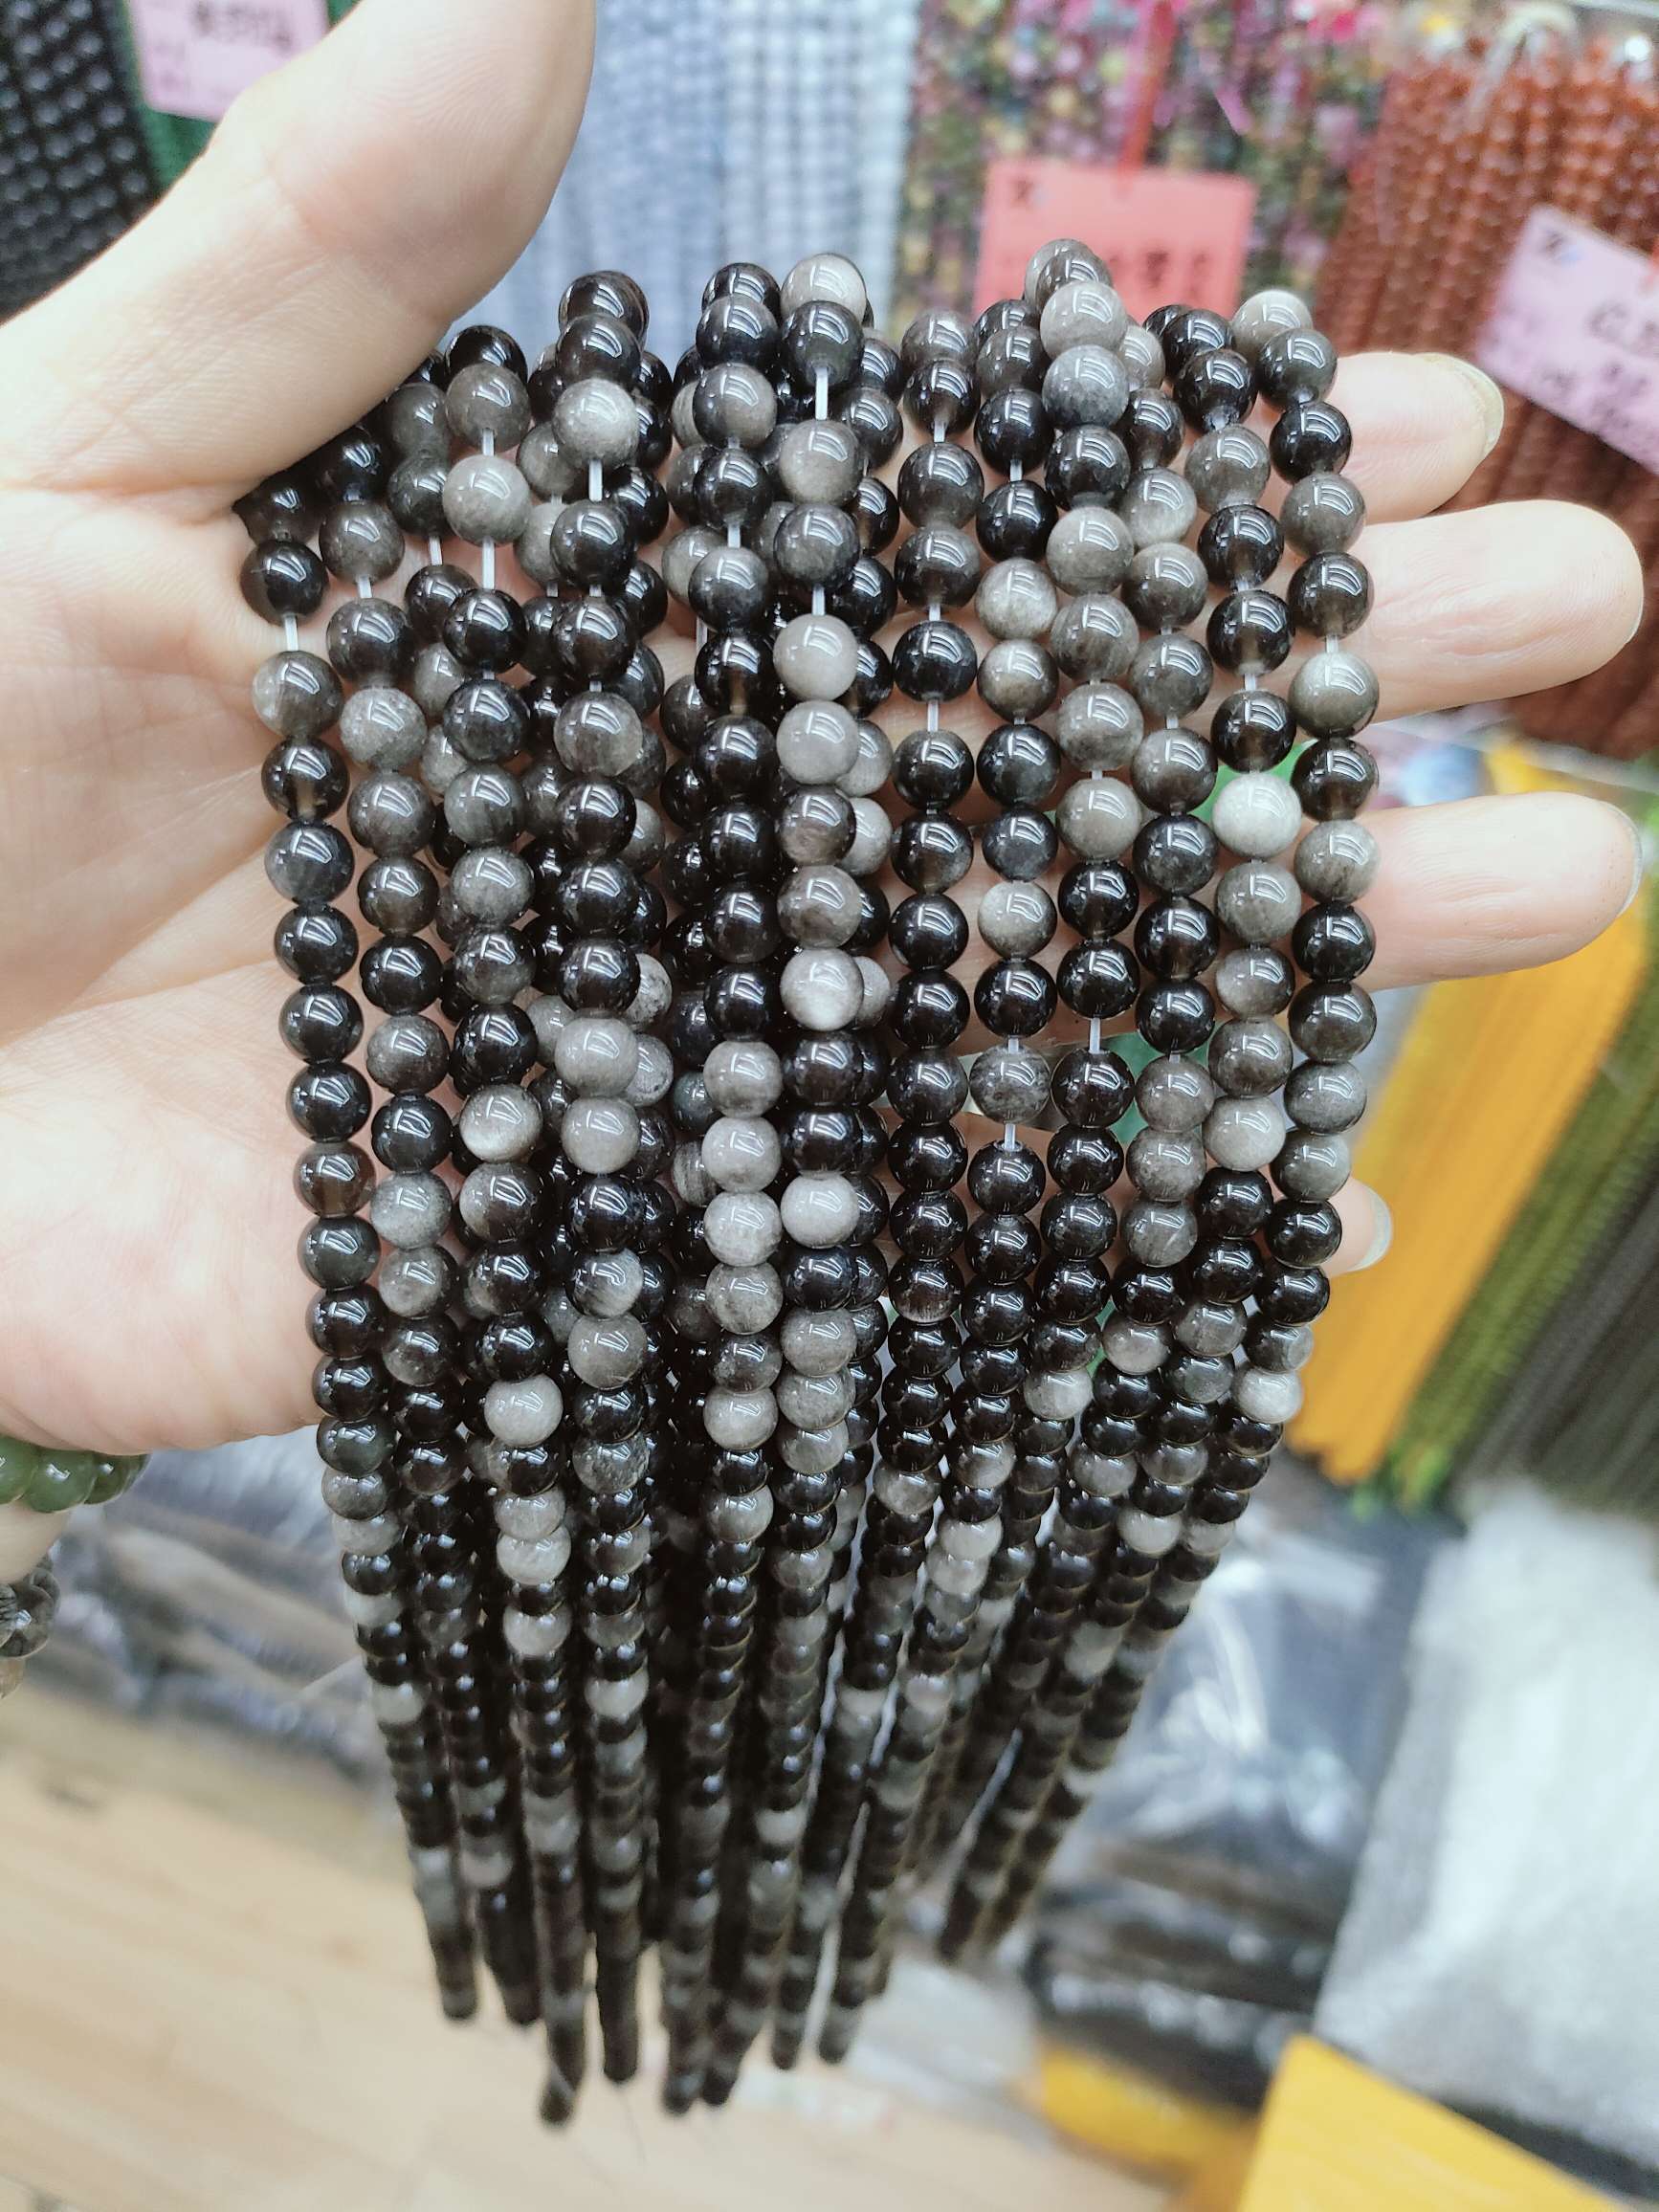 半成品饰品配件 散珠 米珠 琉璃珠 串珠 手工DIY珠子 手链项链珠子饰品材料包